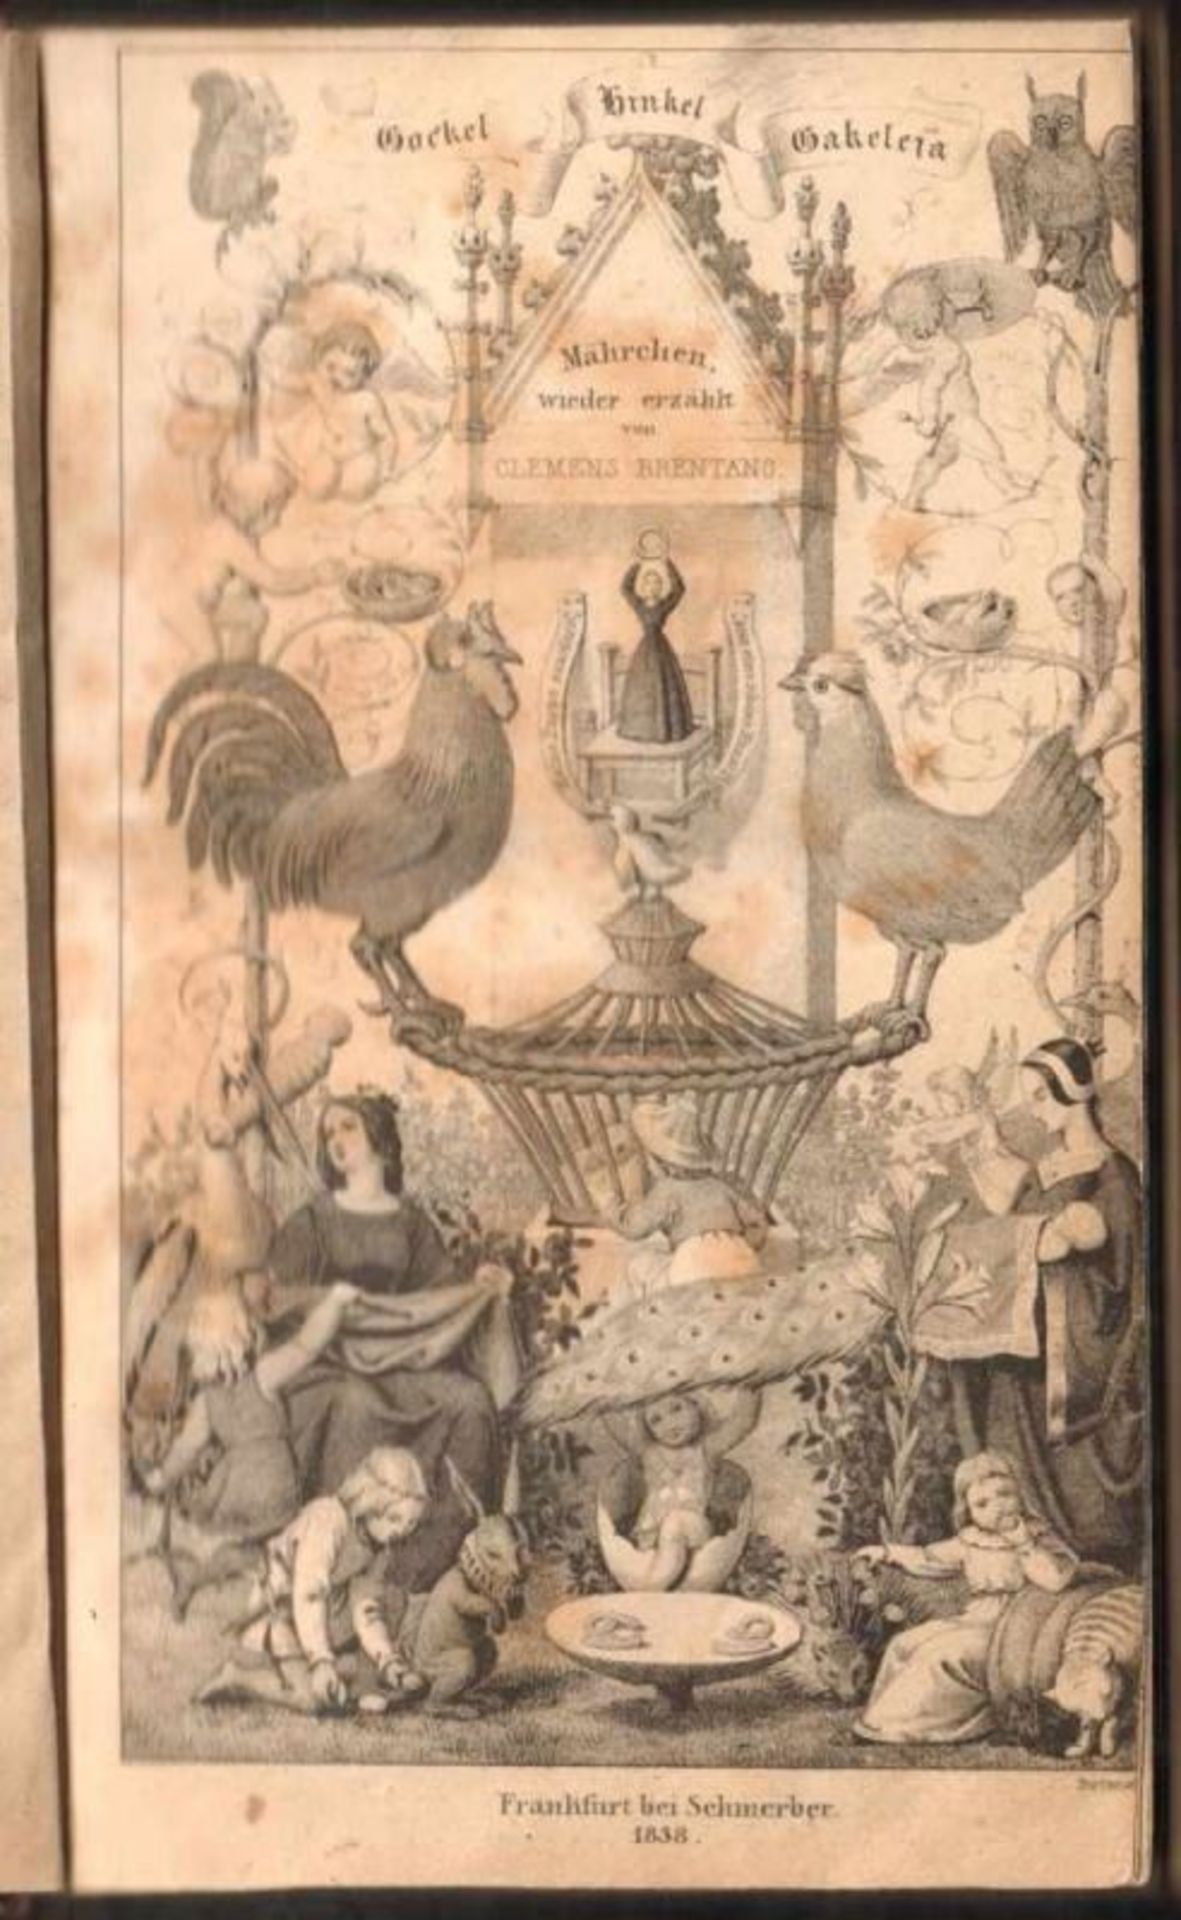 Clemens Brentano. Gockel, Hinkel und Gackeleia. Ein Märchen. Frankfurt, Schmerber 1838. 8°. 2 Bl., - Image 2 of 2